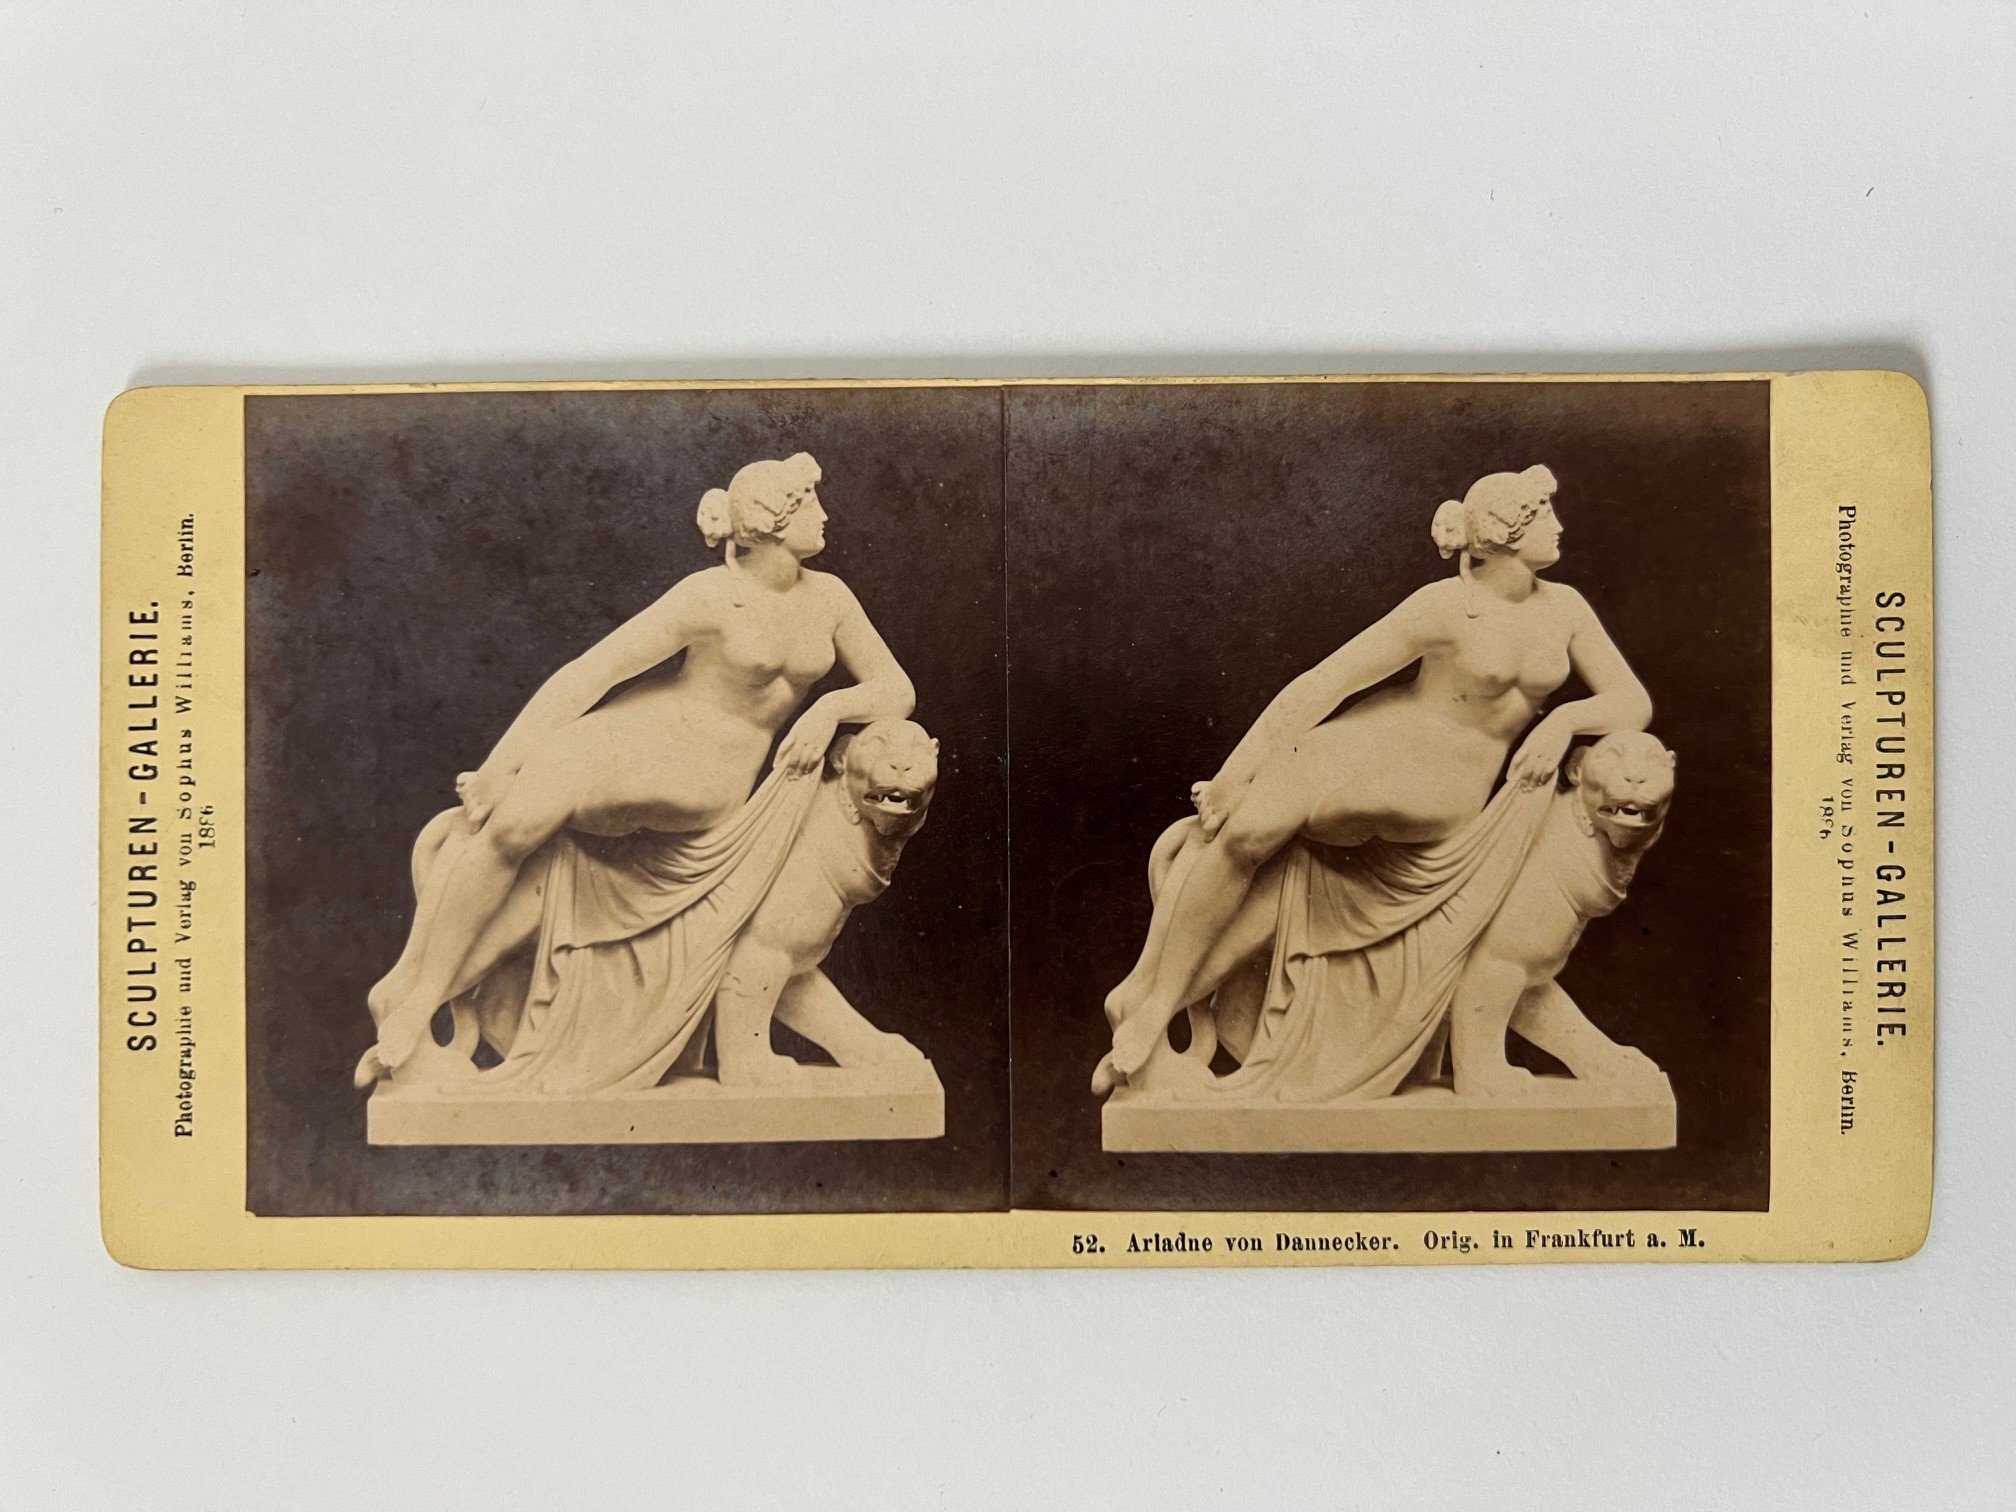 Stereobild, Sophus Williams, Frankfurt, 52, Ariadne von Dannecker, 1886. (Taunus-Rhein-Main - Regionalgeschichtliche Sammlung Dr. Stefan Naas CC BY-NC-SA)